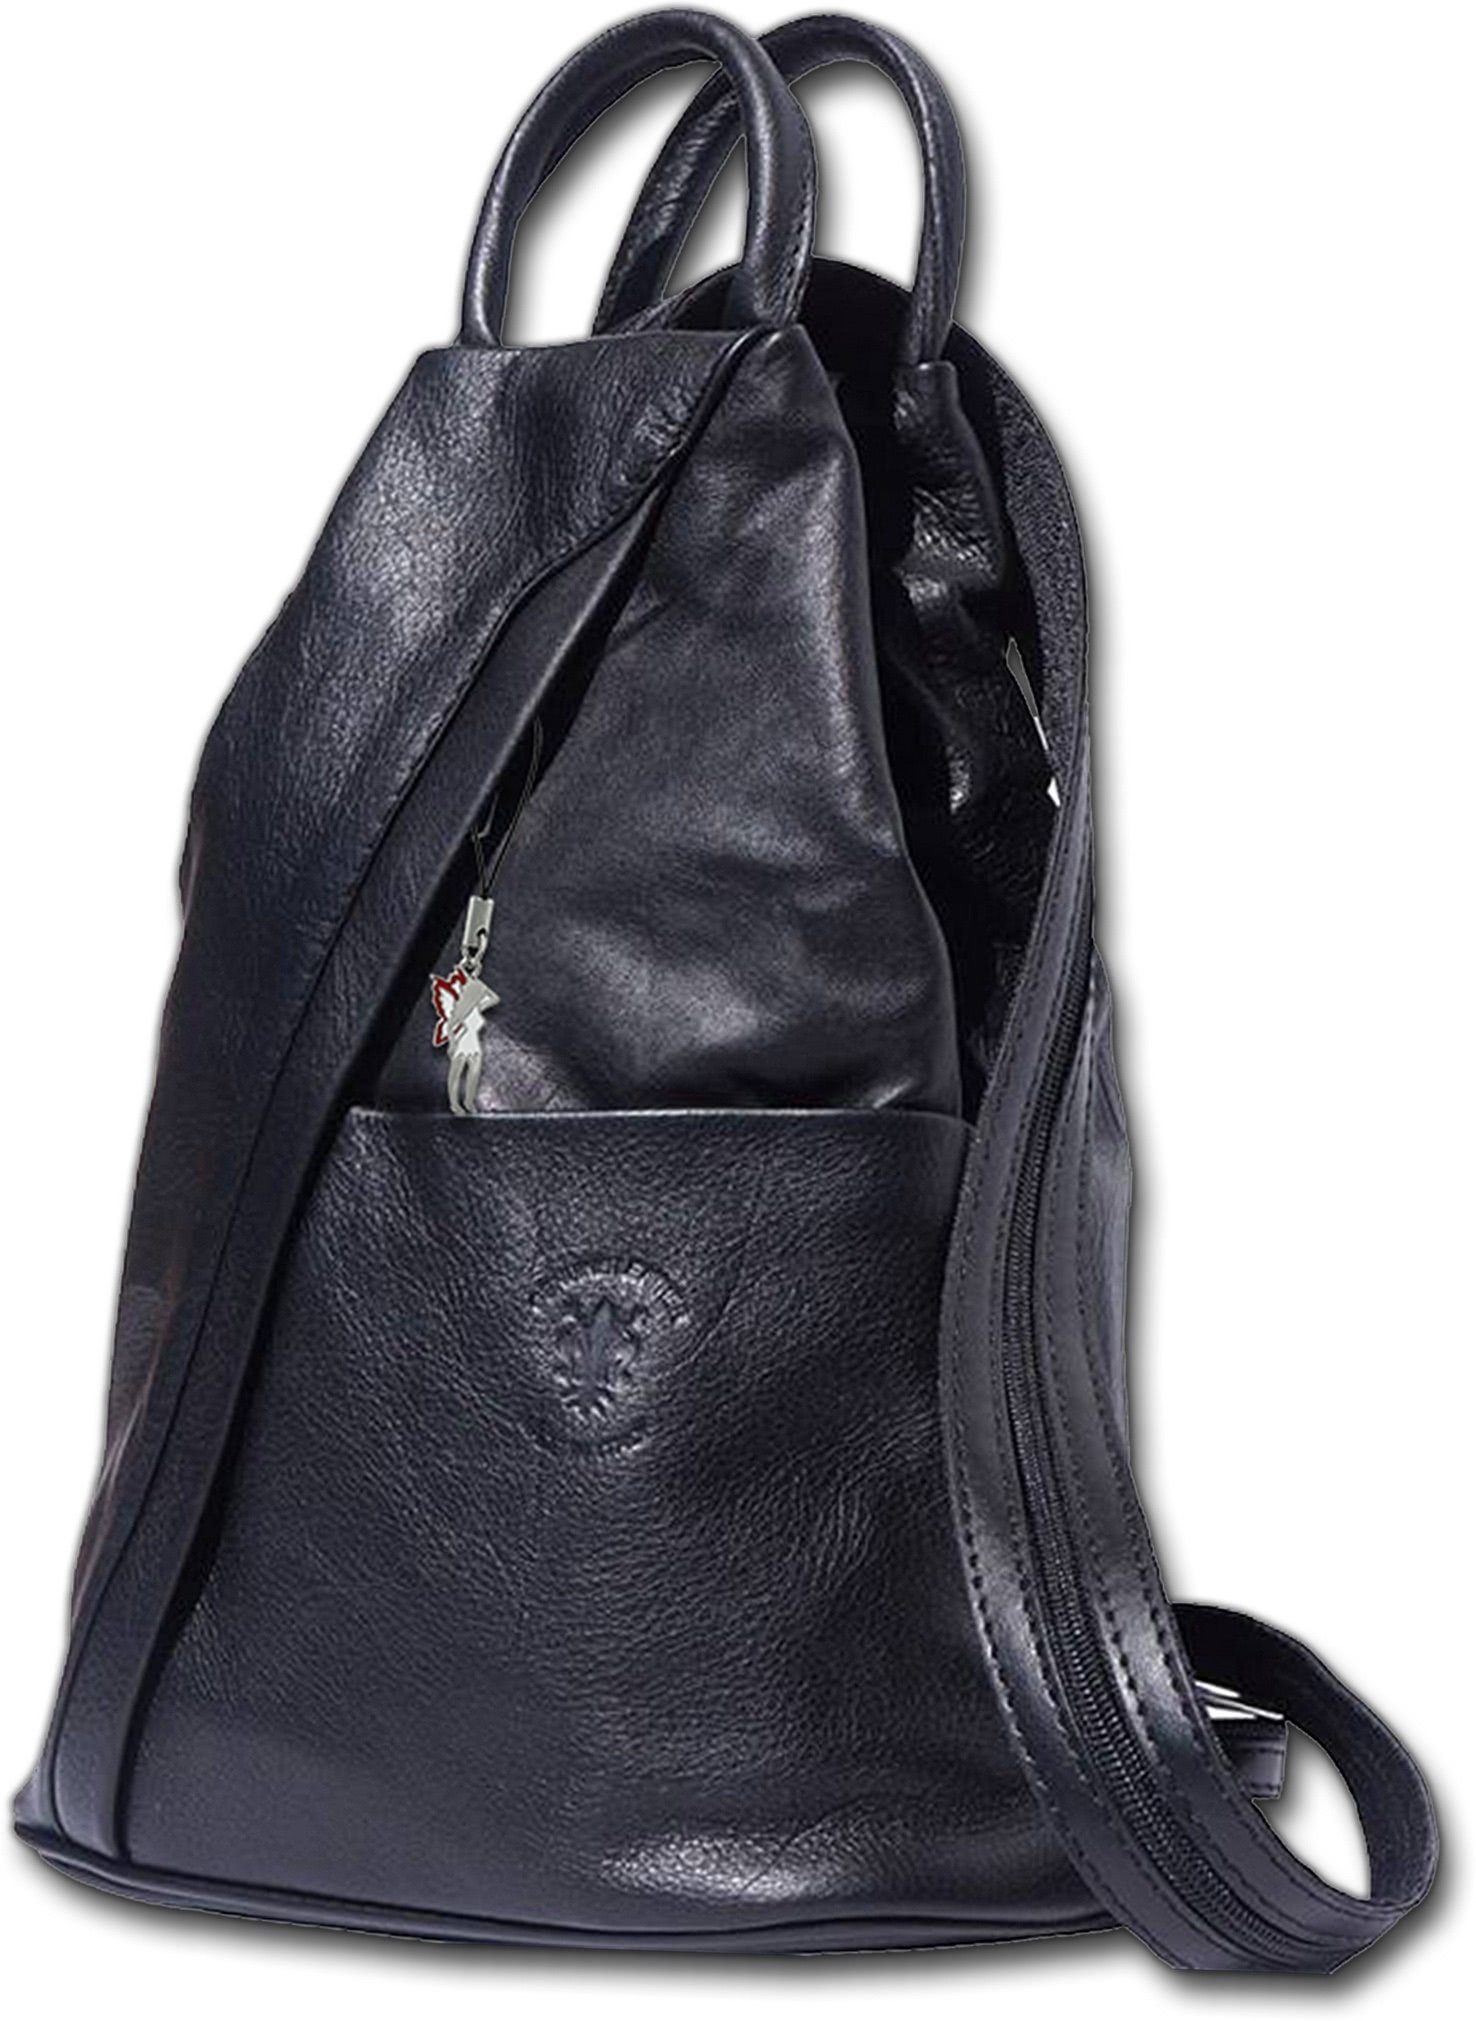 FLORENCE Cityrucksack Florence echtes Leder Damentasche (Schultertasche), Damen  Rucksack, Tasche Echtleder schwarz, Made-In Italy